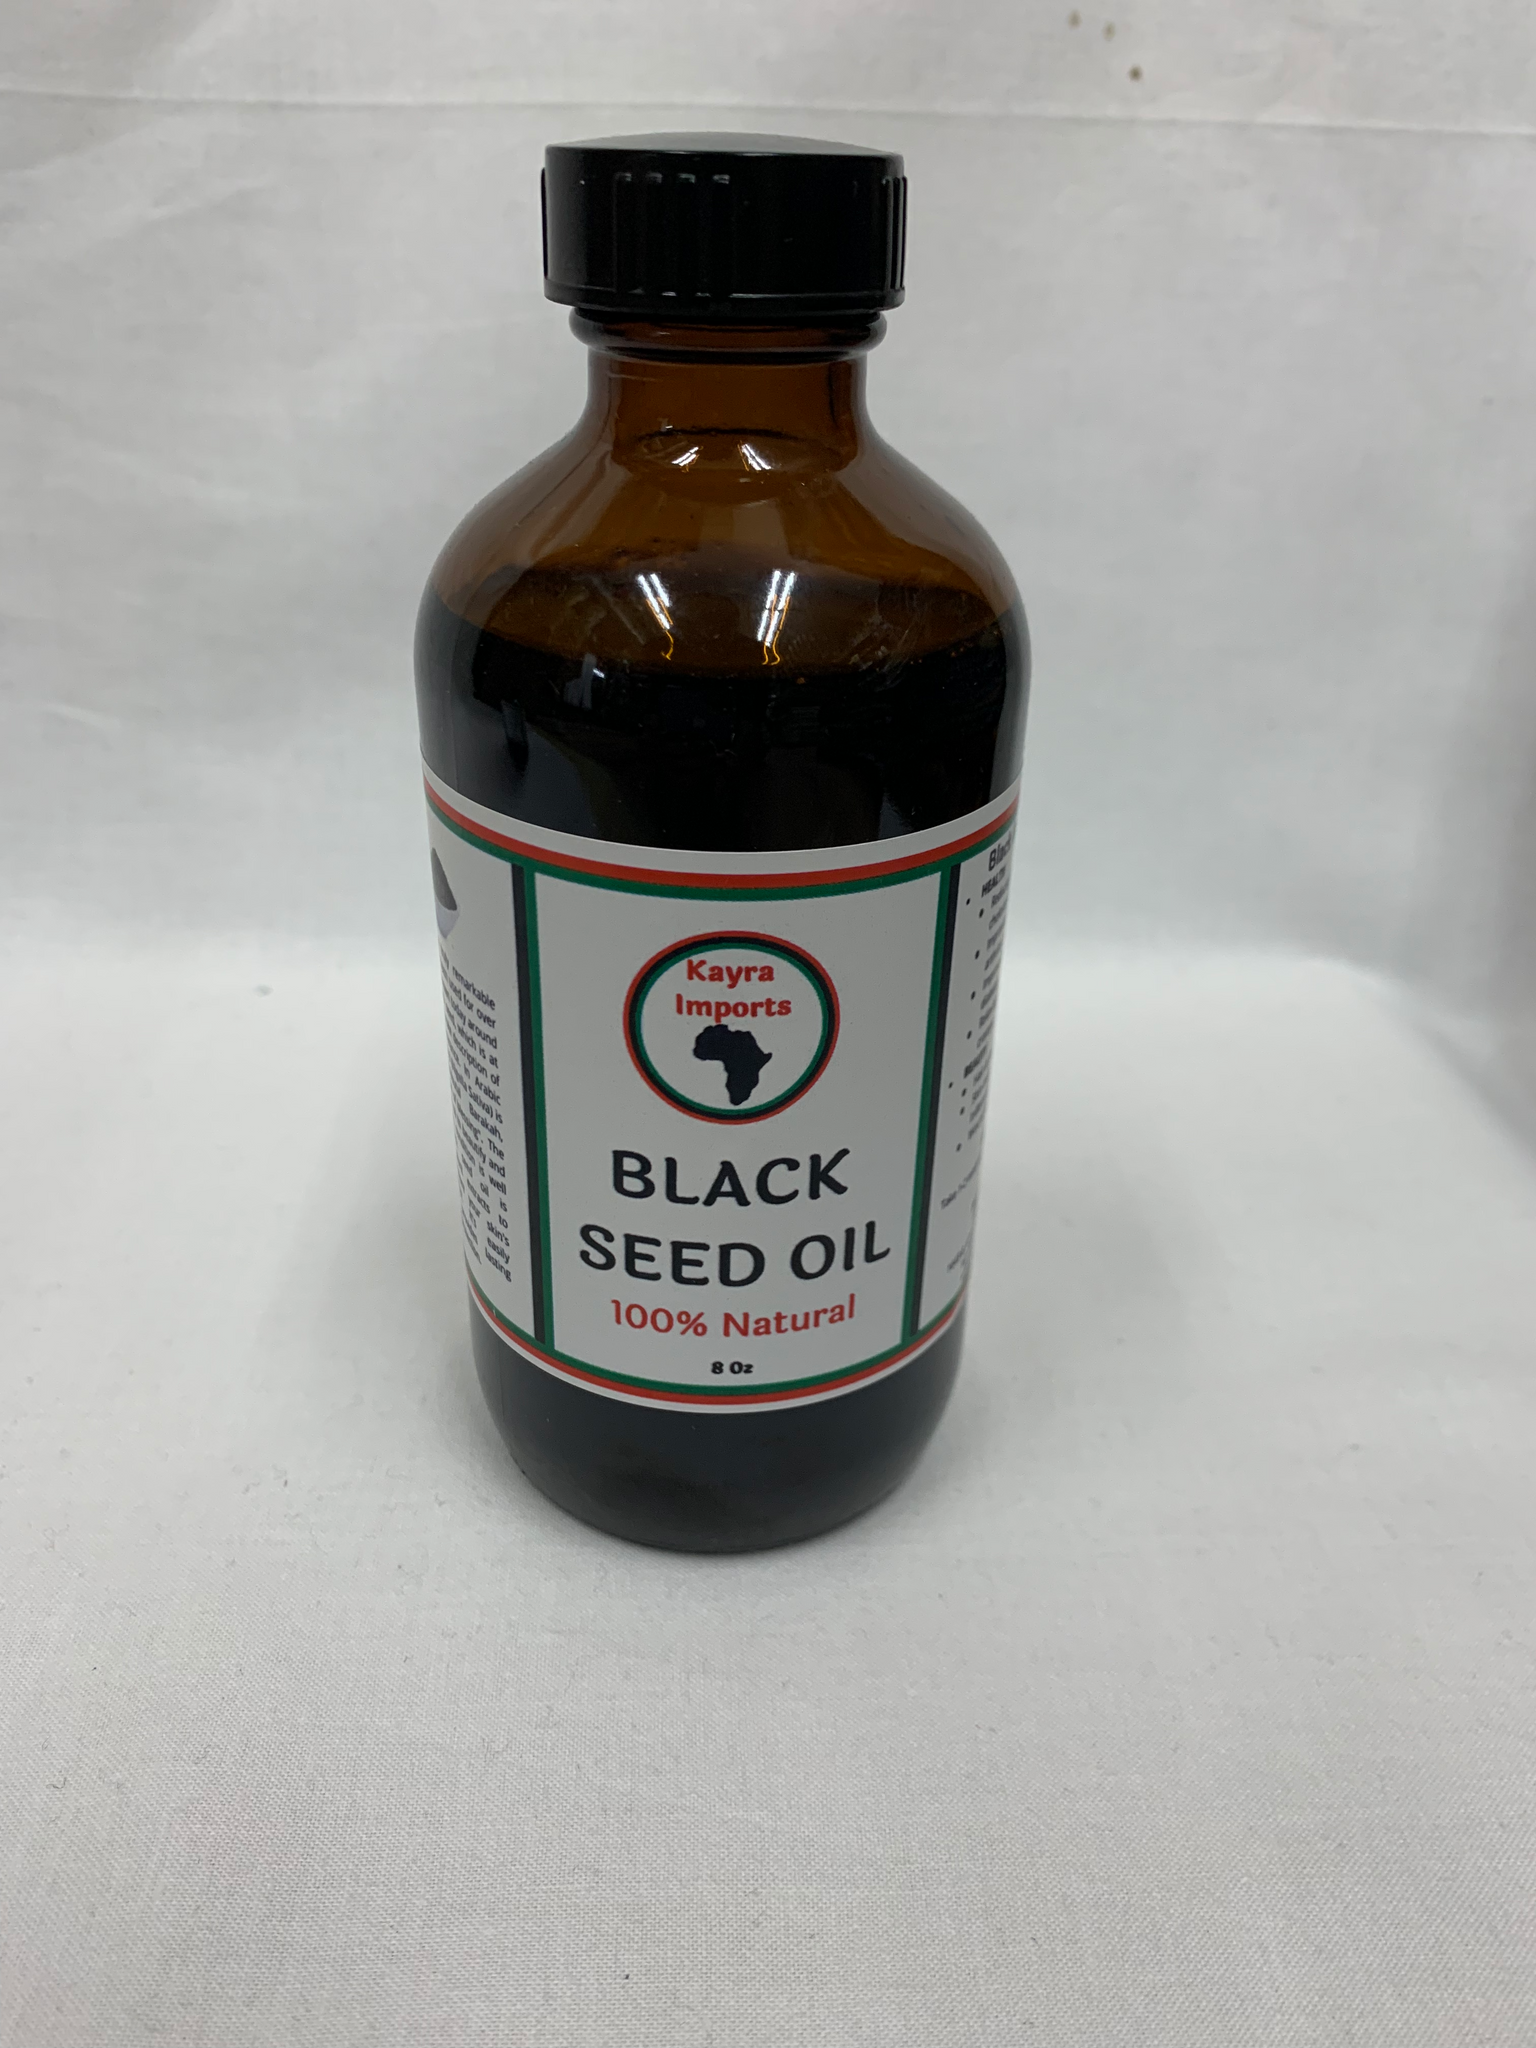 Black Seed Oil - 8oz